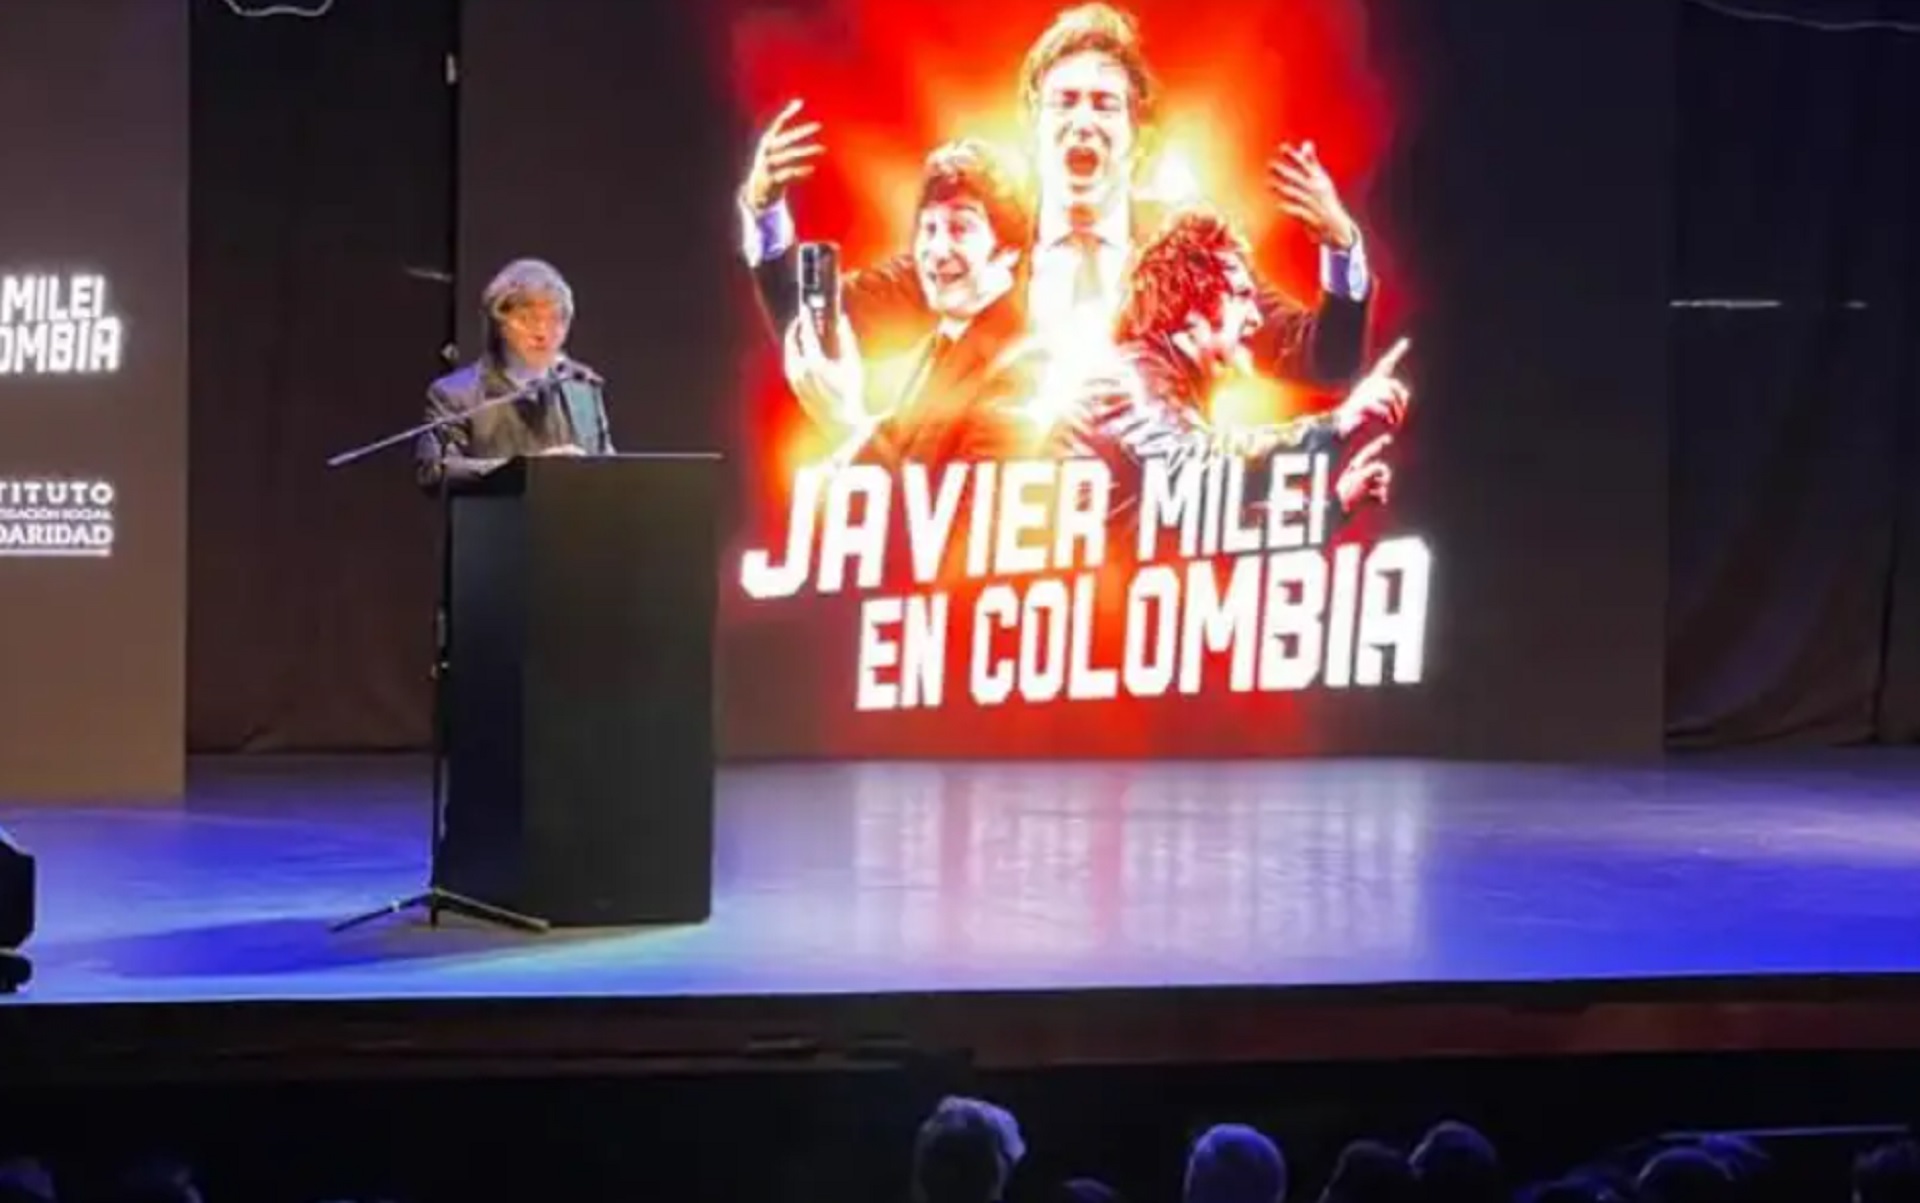 Una imagen de Javier Milei durante una charla en Colombia